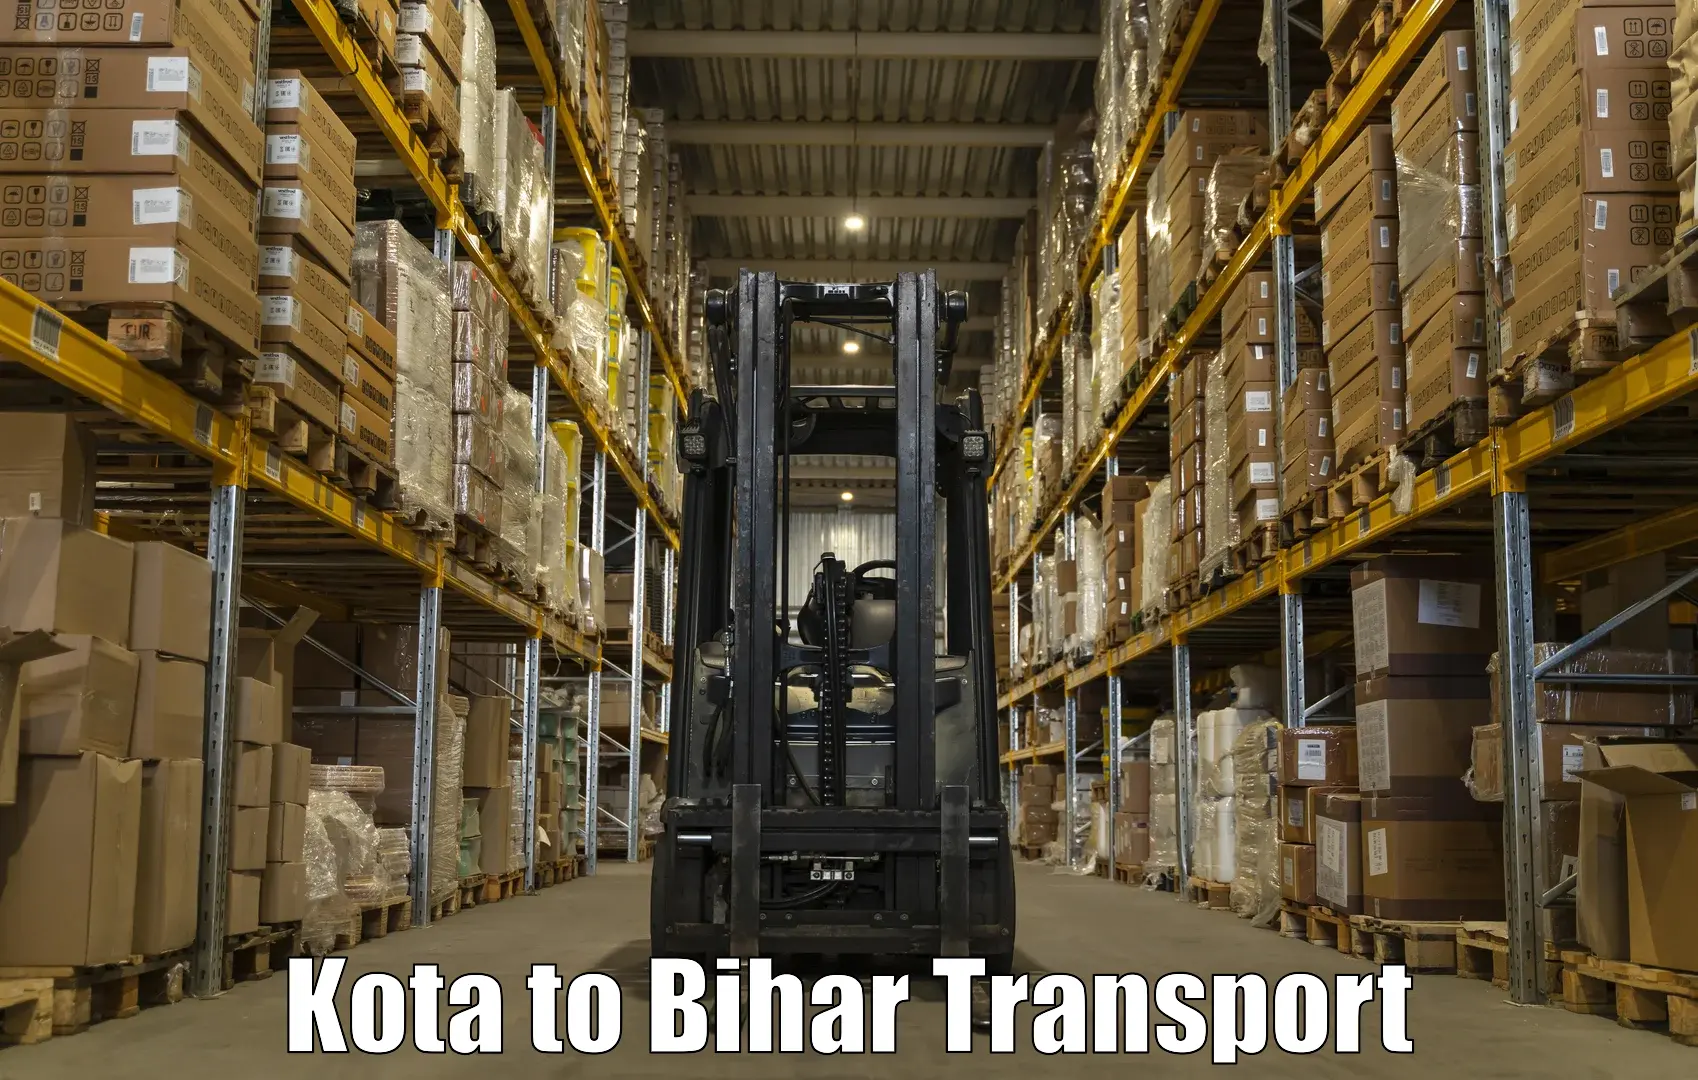 Shipping partner Kota to Dhaka